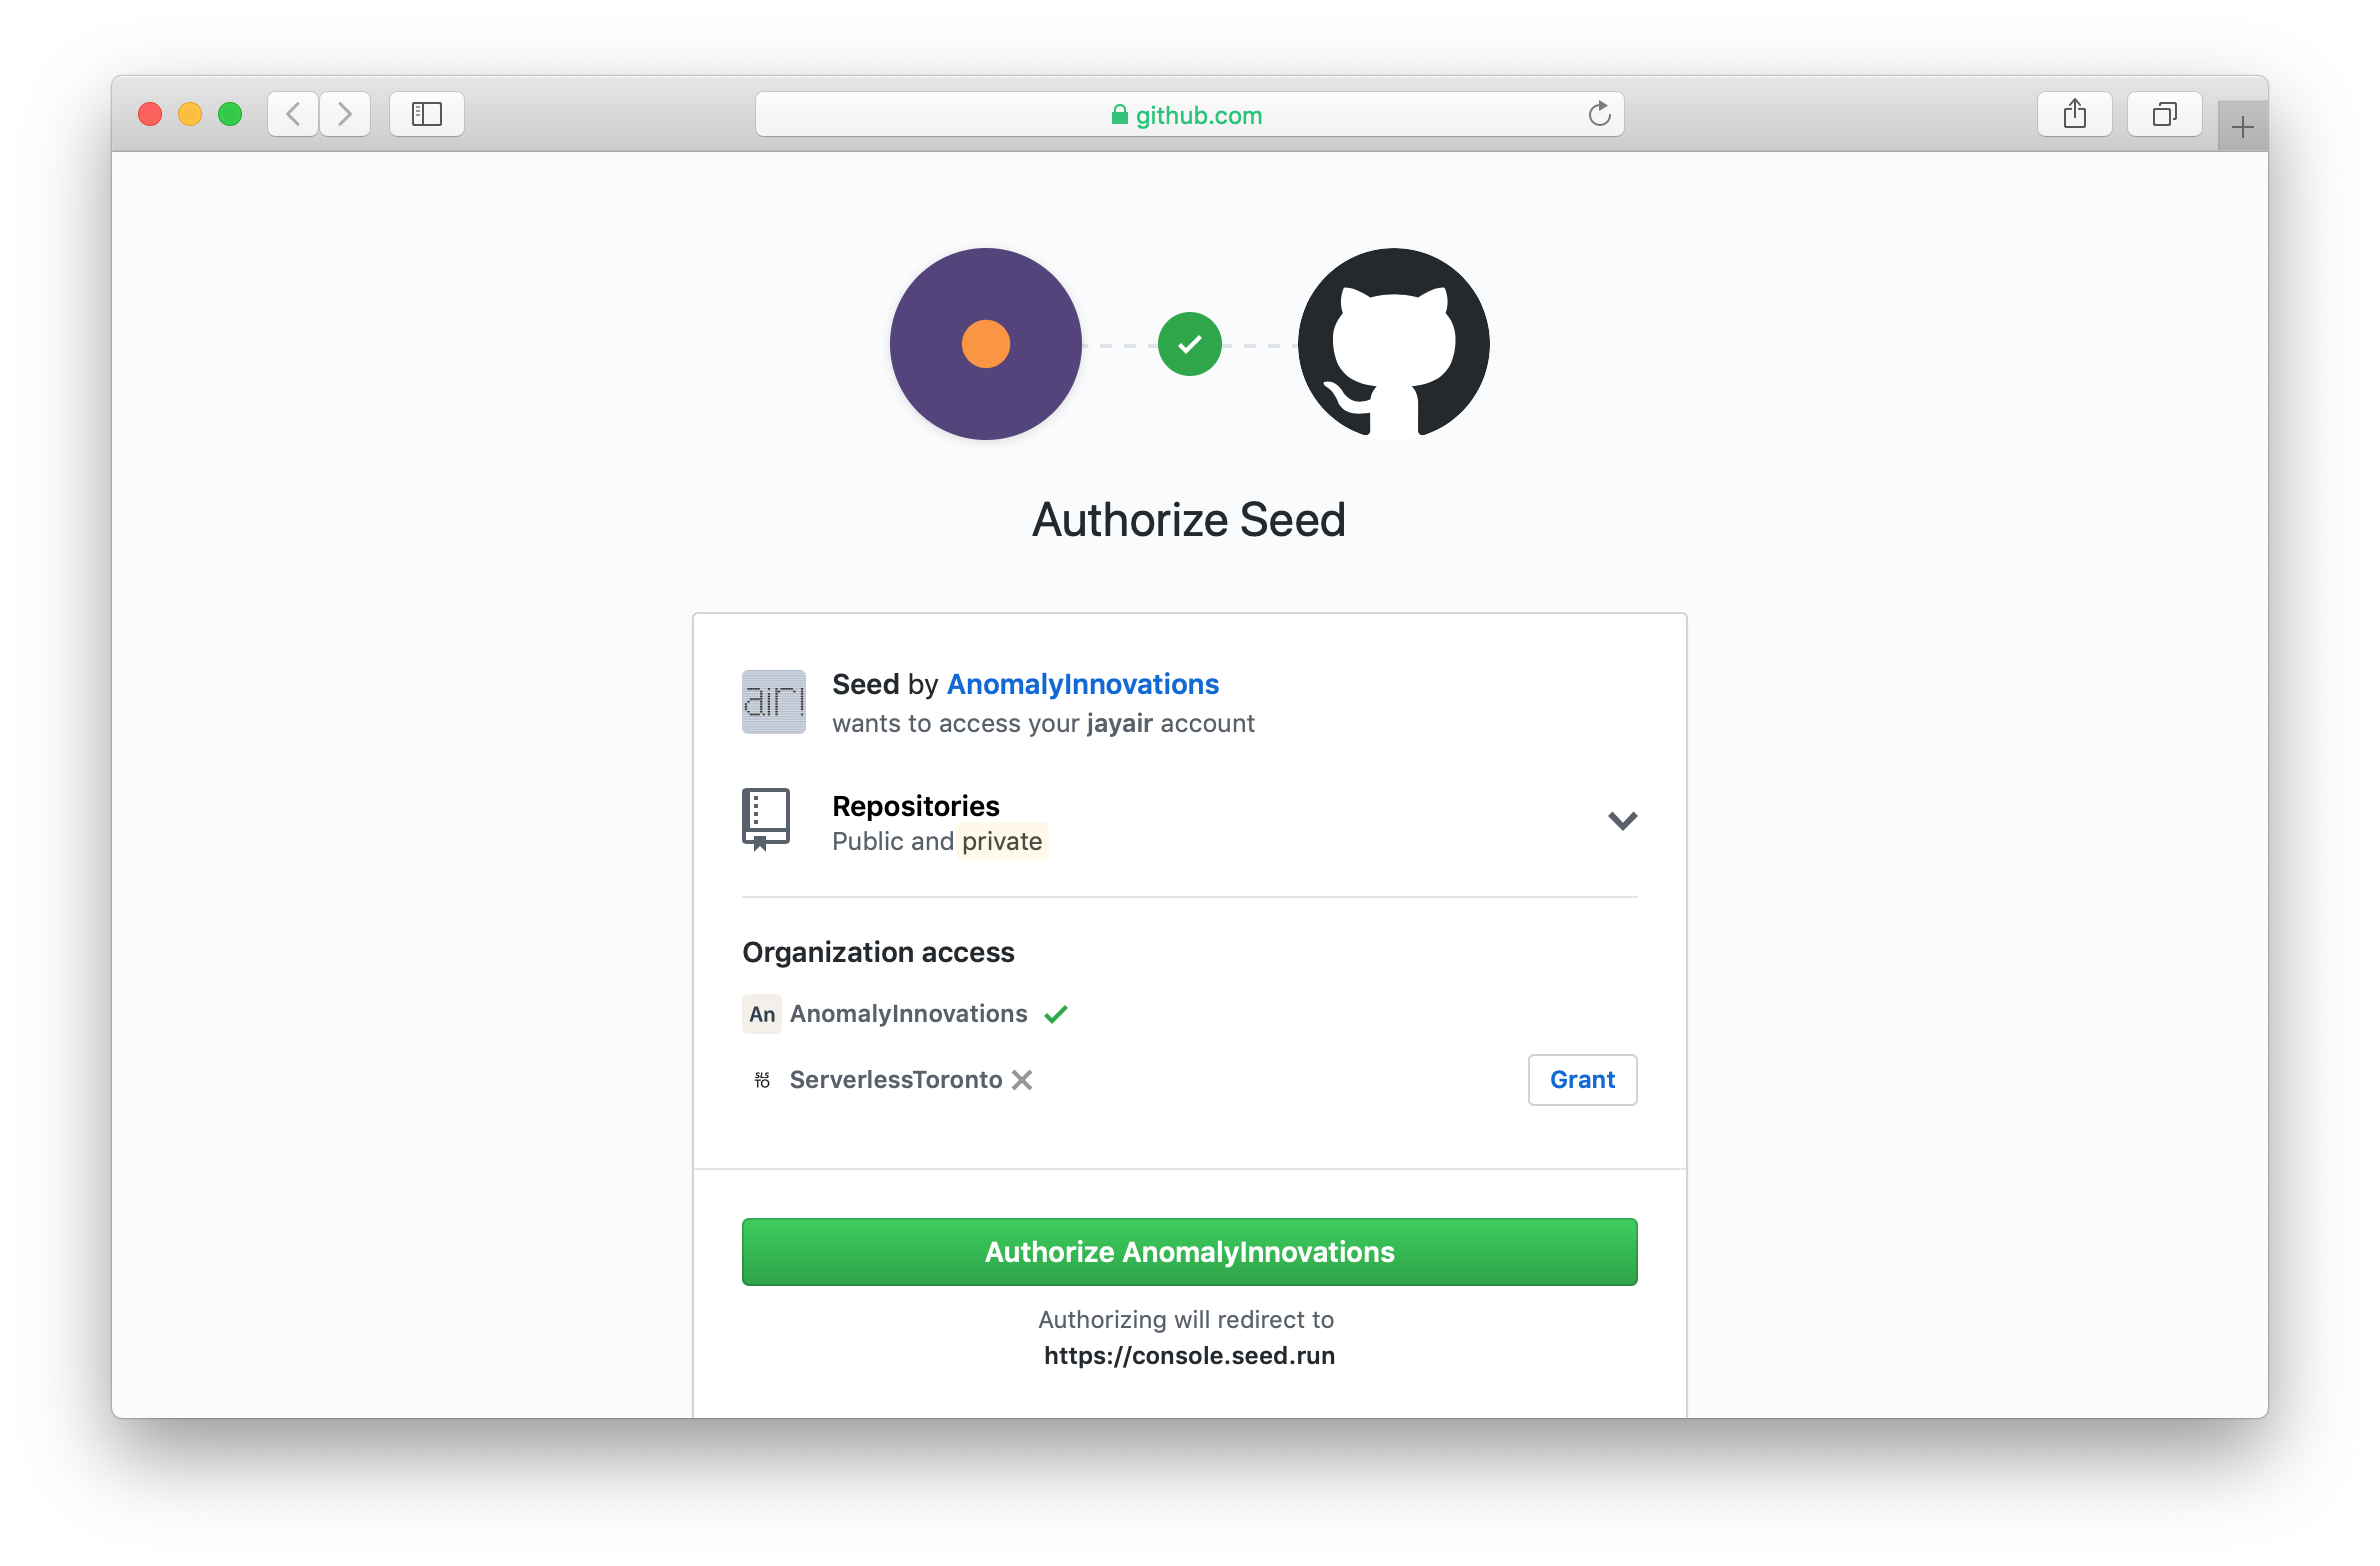 Authorize Seed on GitHub